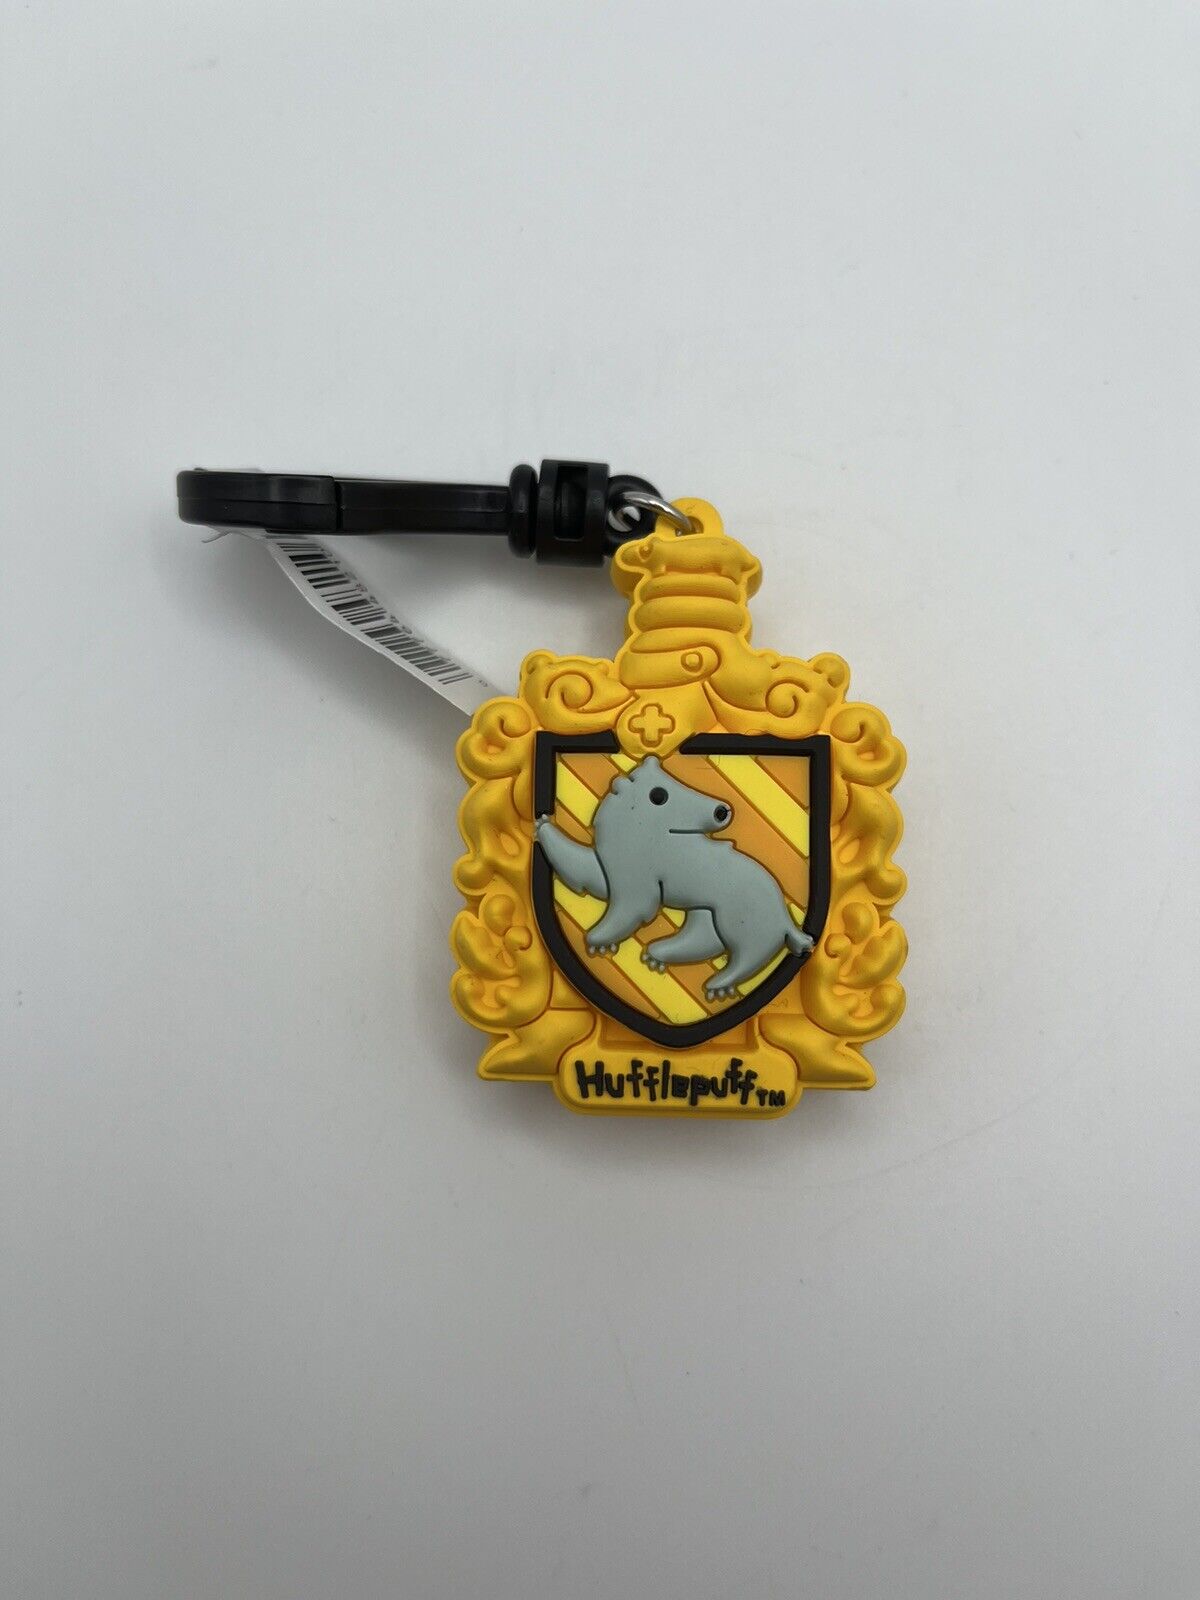 Harry Potter 3D Figural Bag Clip - Hufflepuff Crest 2.5”